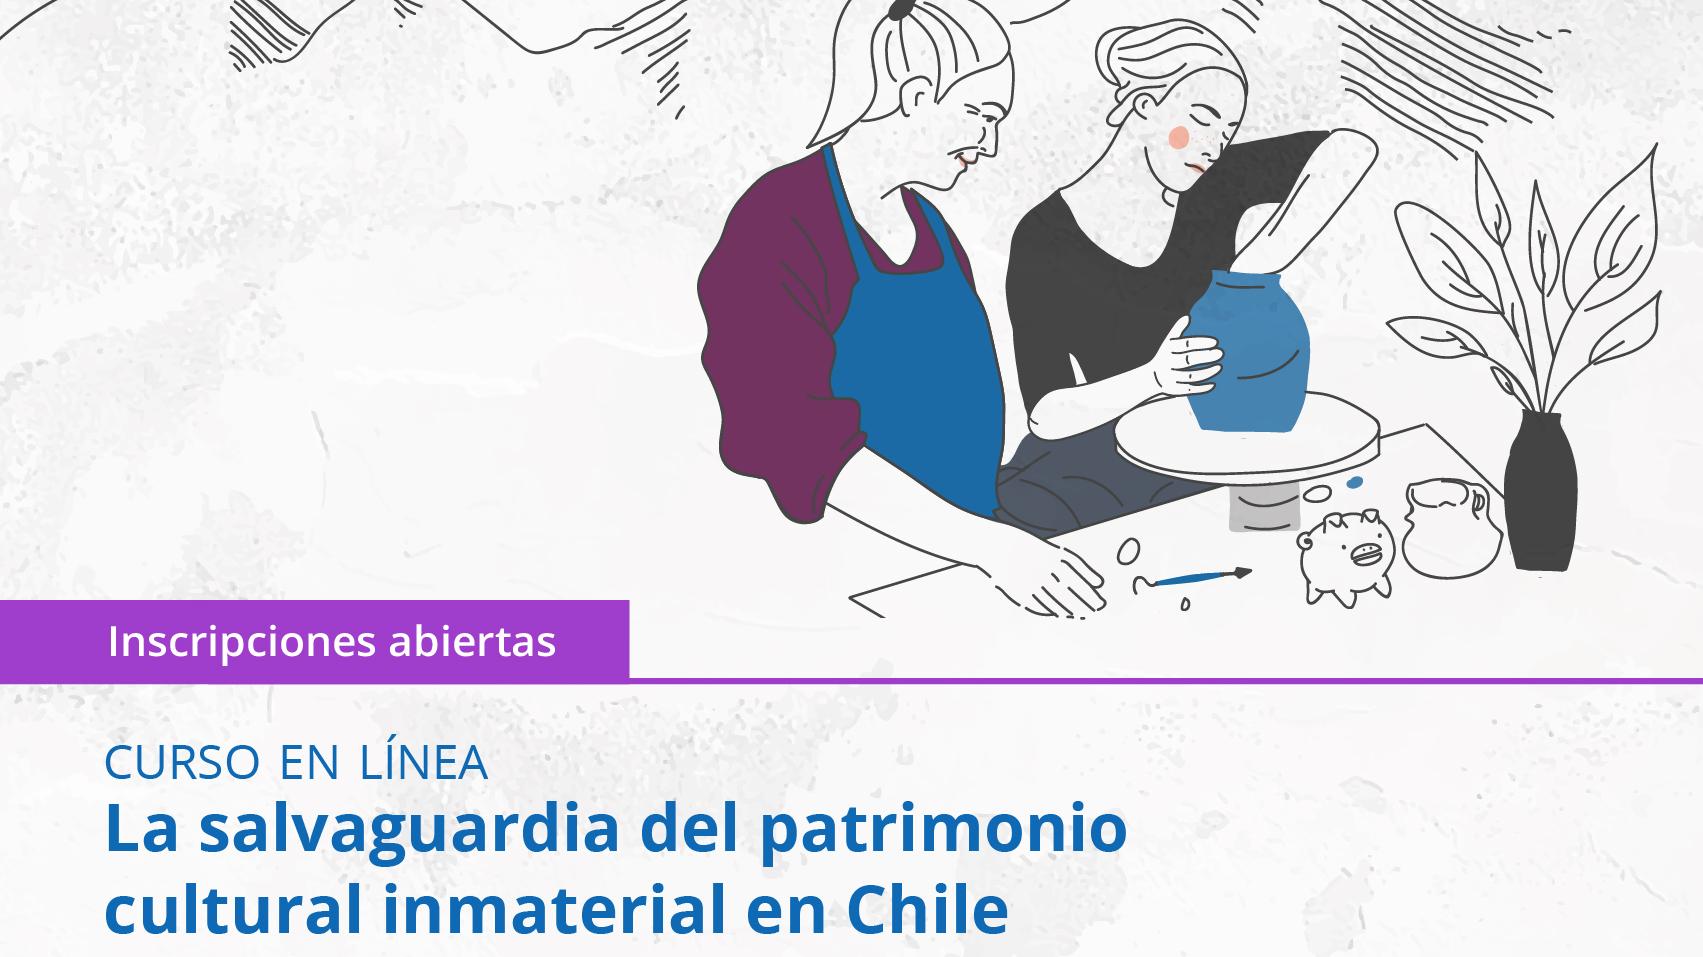 Abren inscripciones a curso sobre patrimonio cultural inmaterial en Chile